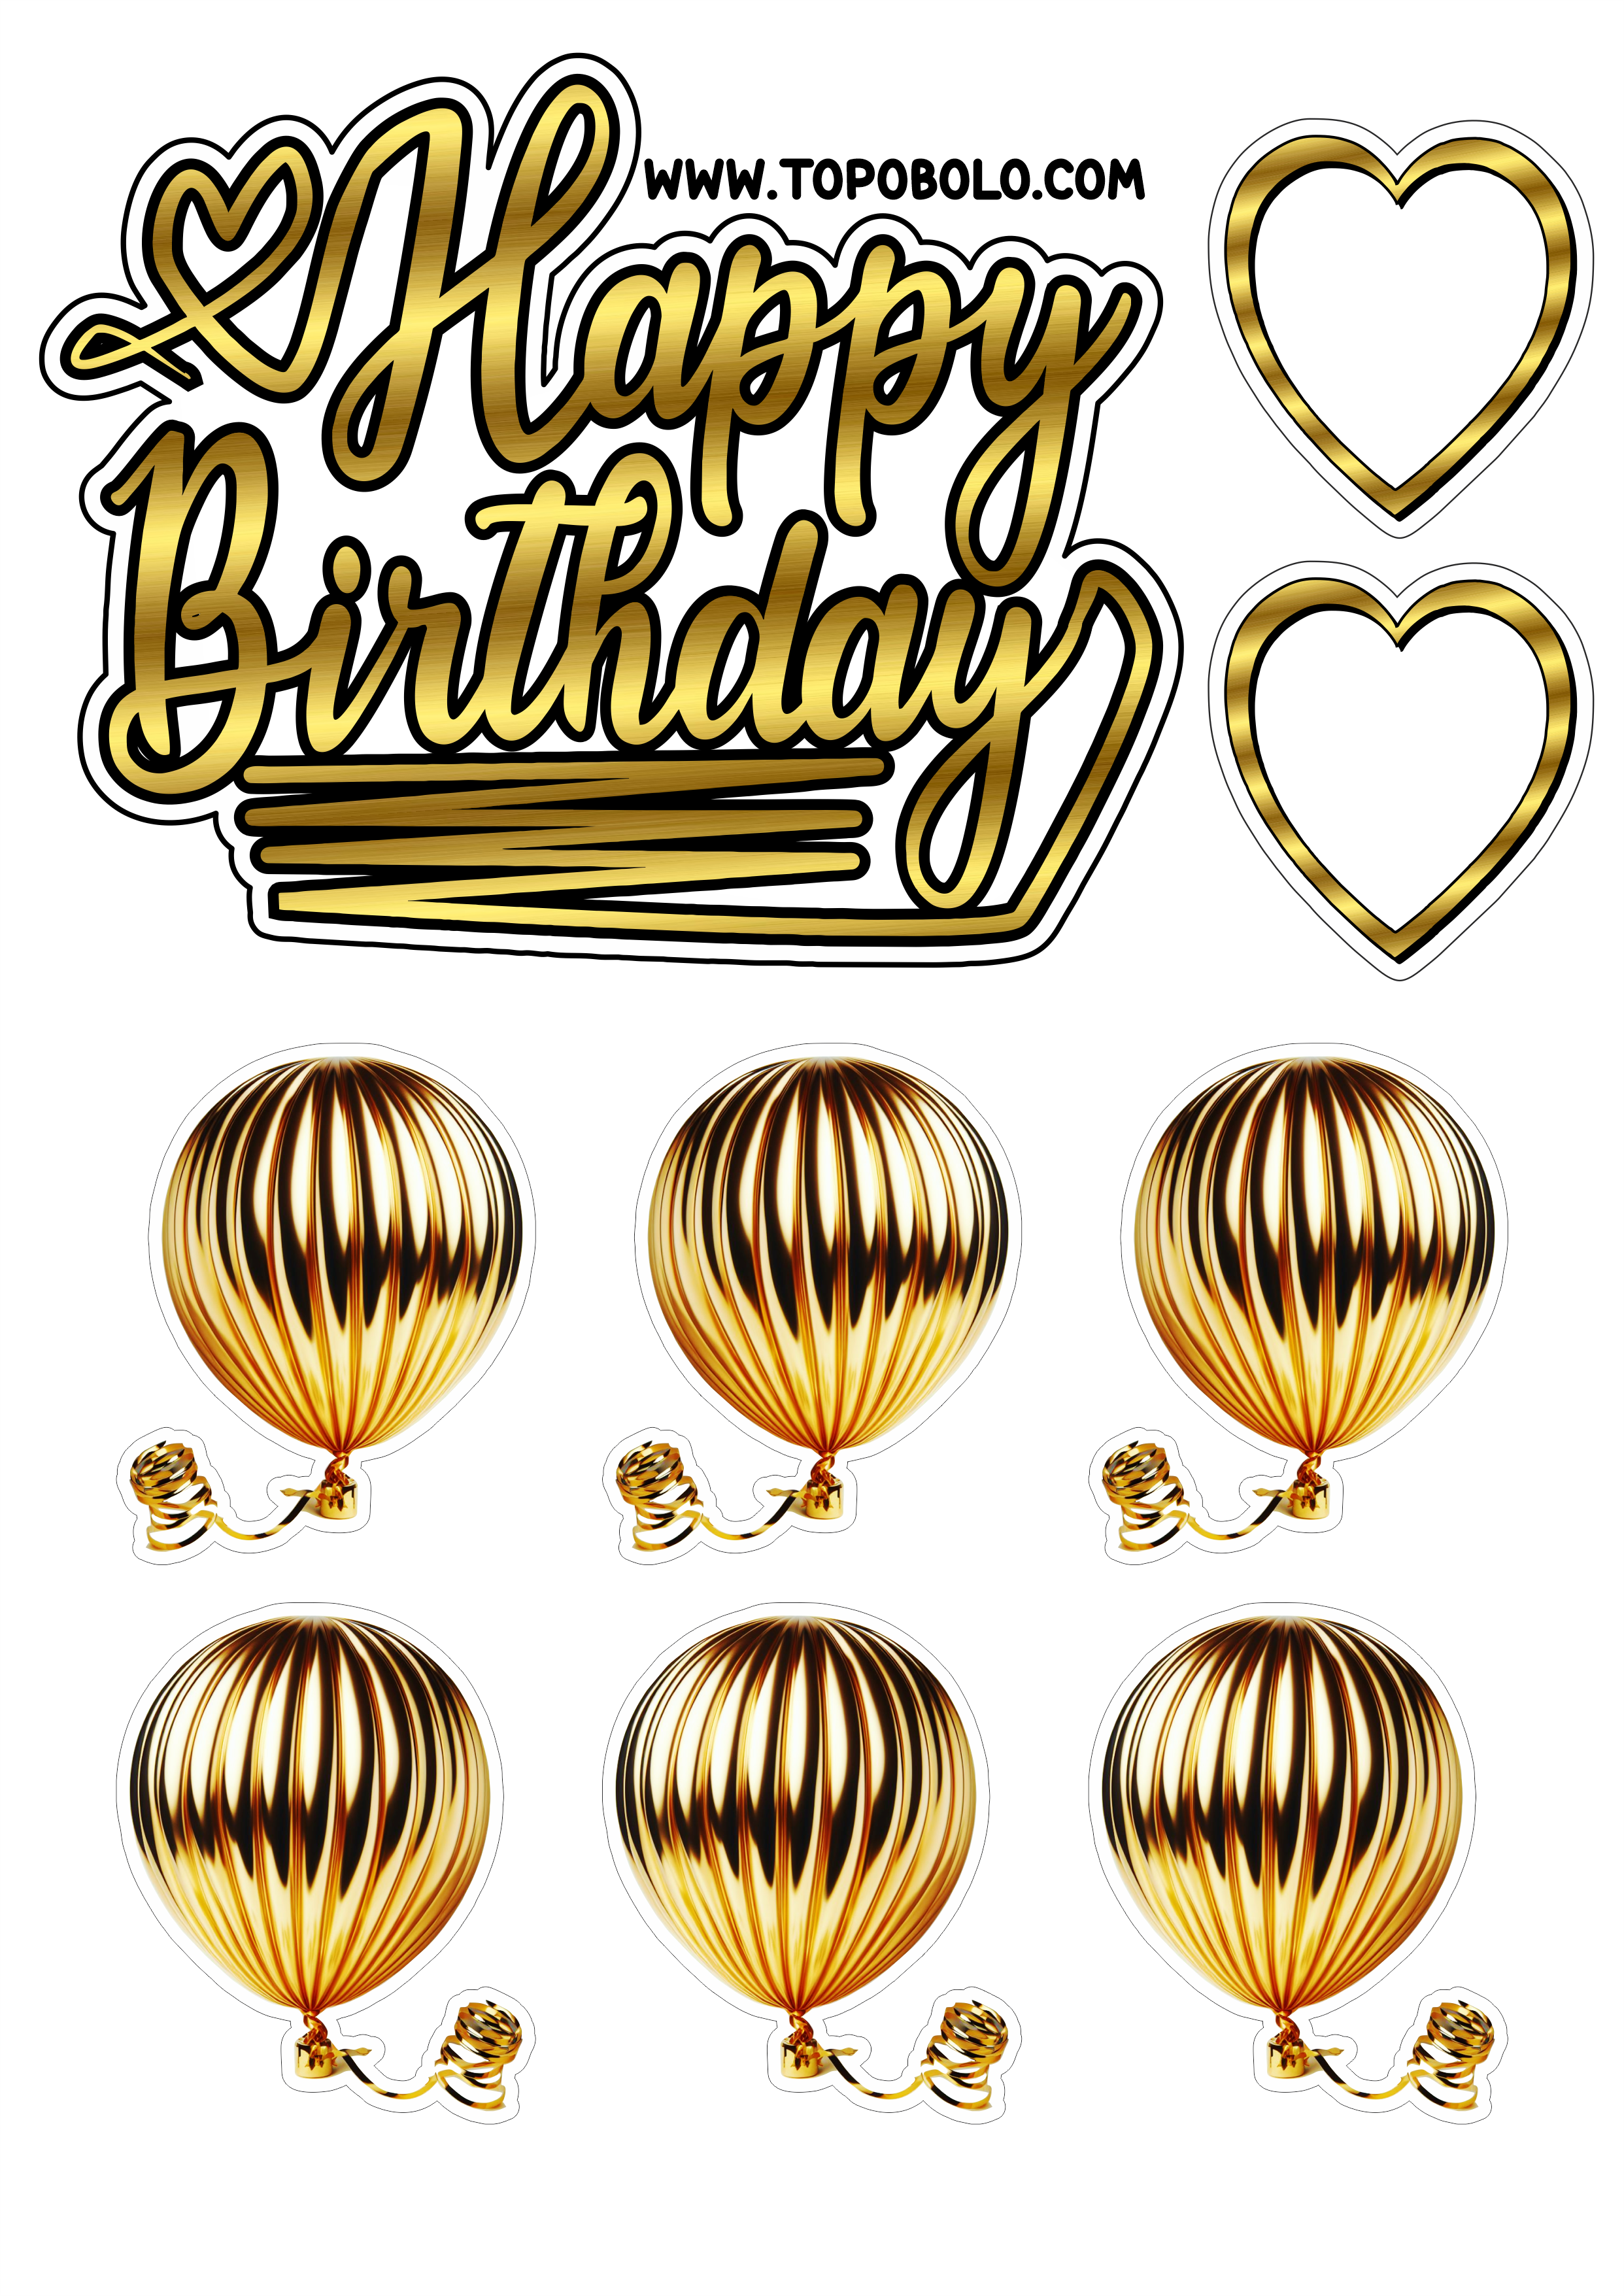 Topo de bolo para imprimir Happy Birthday aniversário dourado com corações png